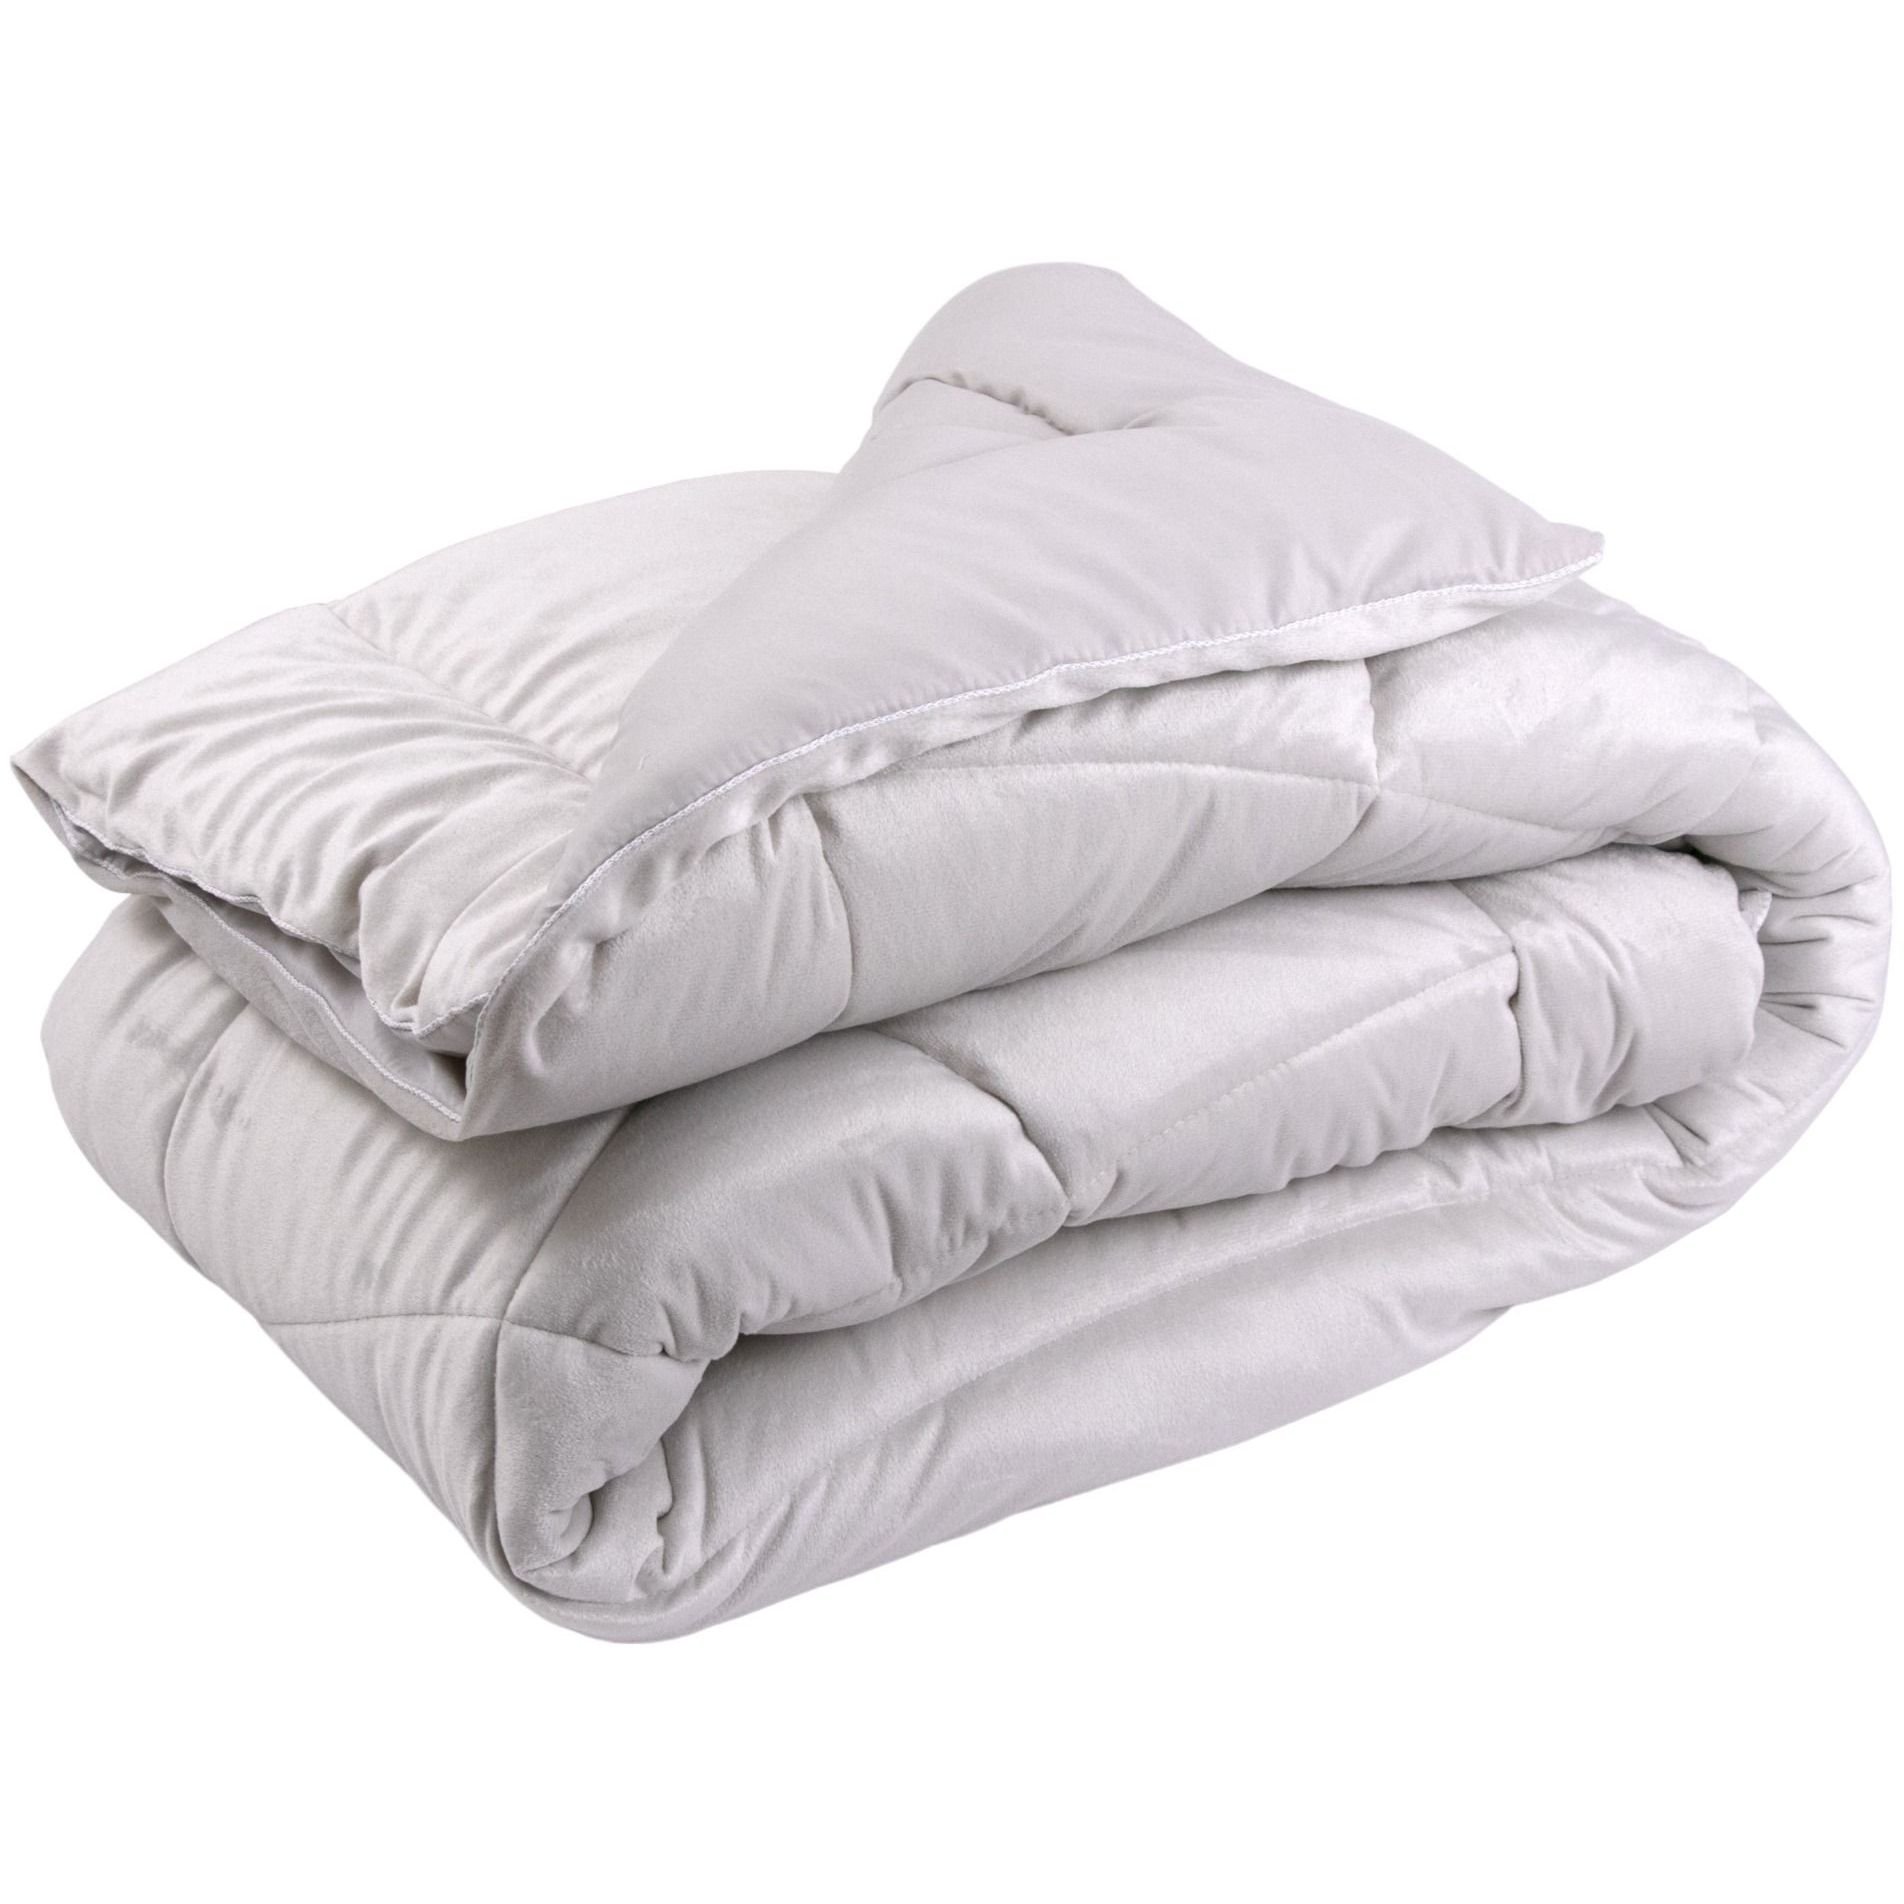 Набор силиконовый Руно Soft Pearl, бежевый: одеяло, 205х140 см + подушка, 50х70 см (924.55_Soft Pearl) - фото 4